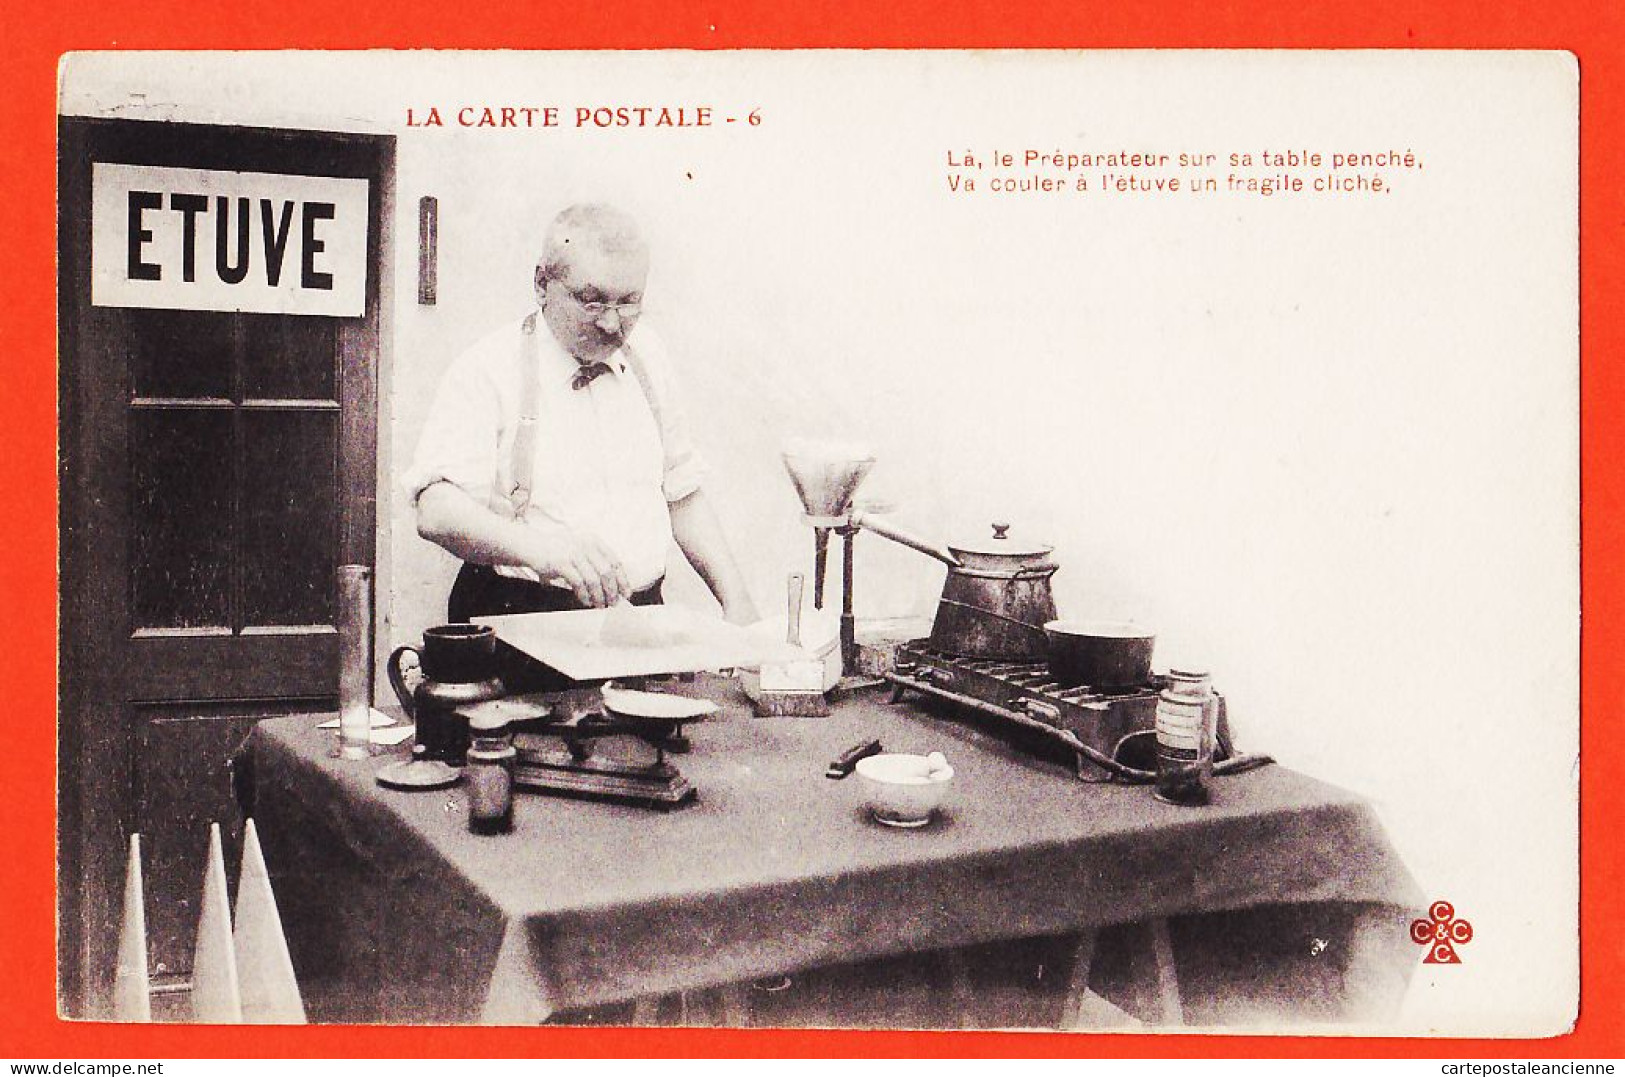 06287 / ♥️ ⭐ ◉  Métier Photographe Ed. LA CARTE POSTALE (6) Préparateur Table Penché Couler Etuve Fragile Cliché 1900s  - Artisanat